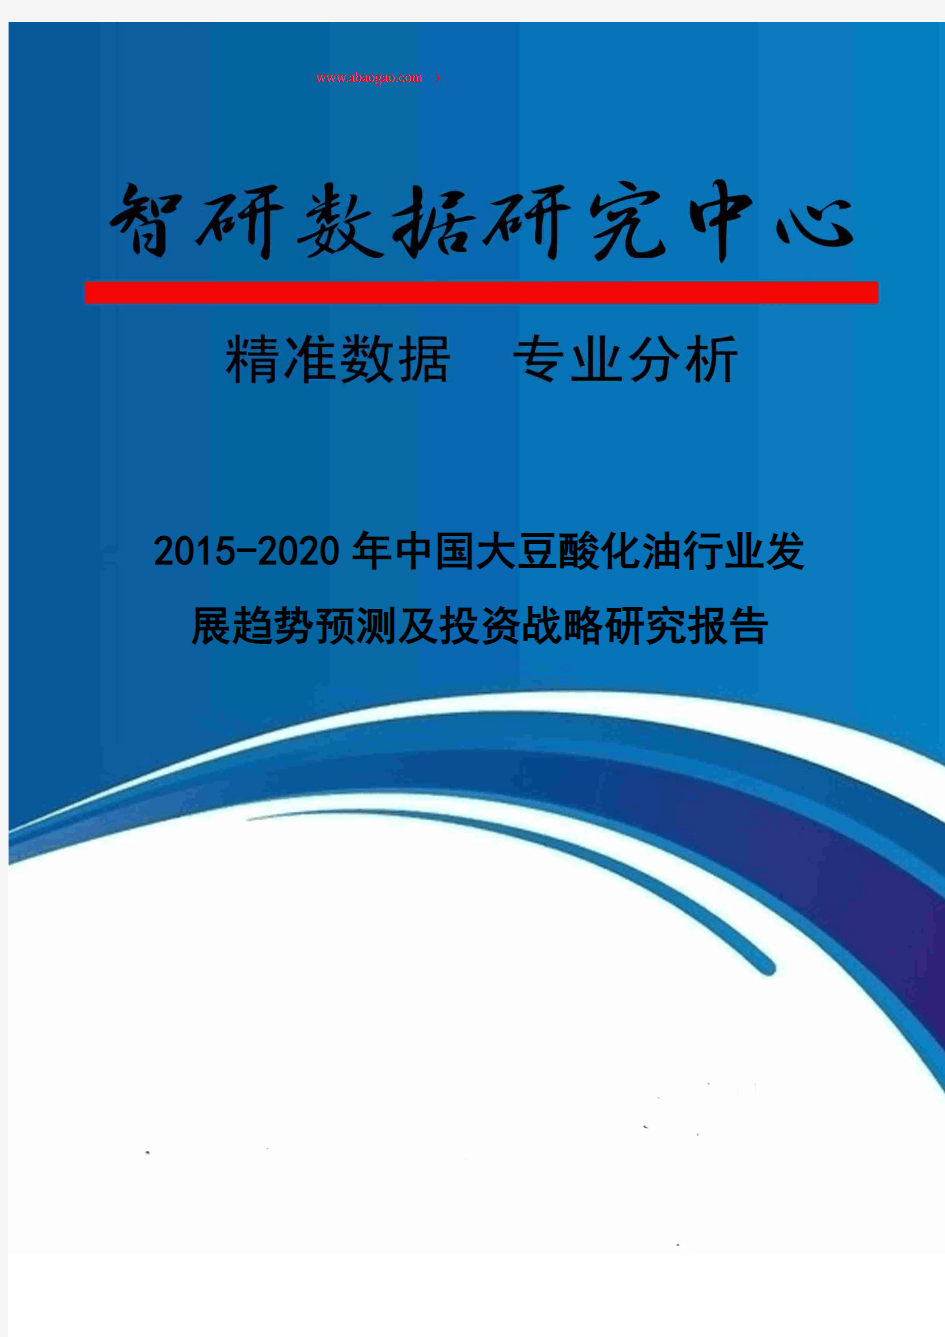 2015-2020年中国大豆酸化油行业发展趋势预测及投资战略研究报告